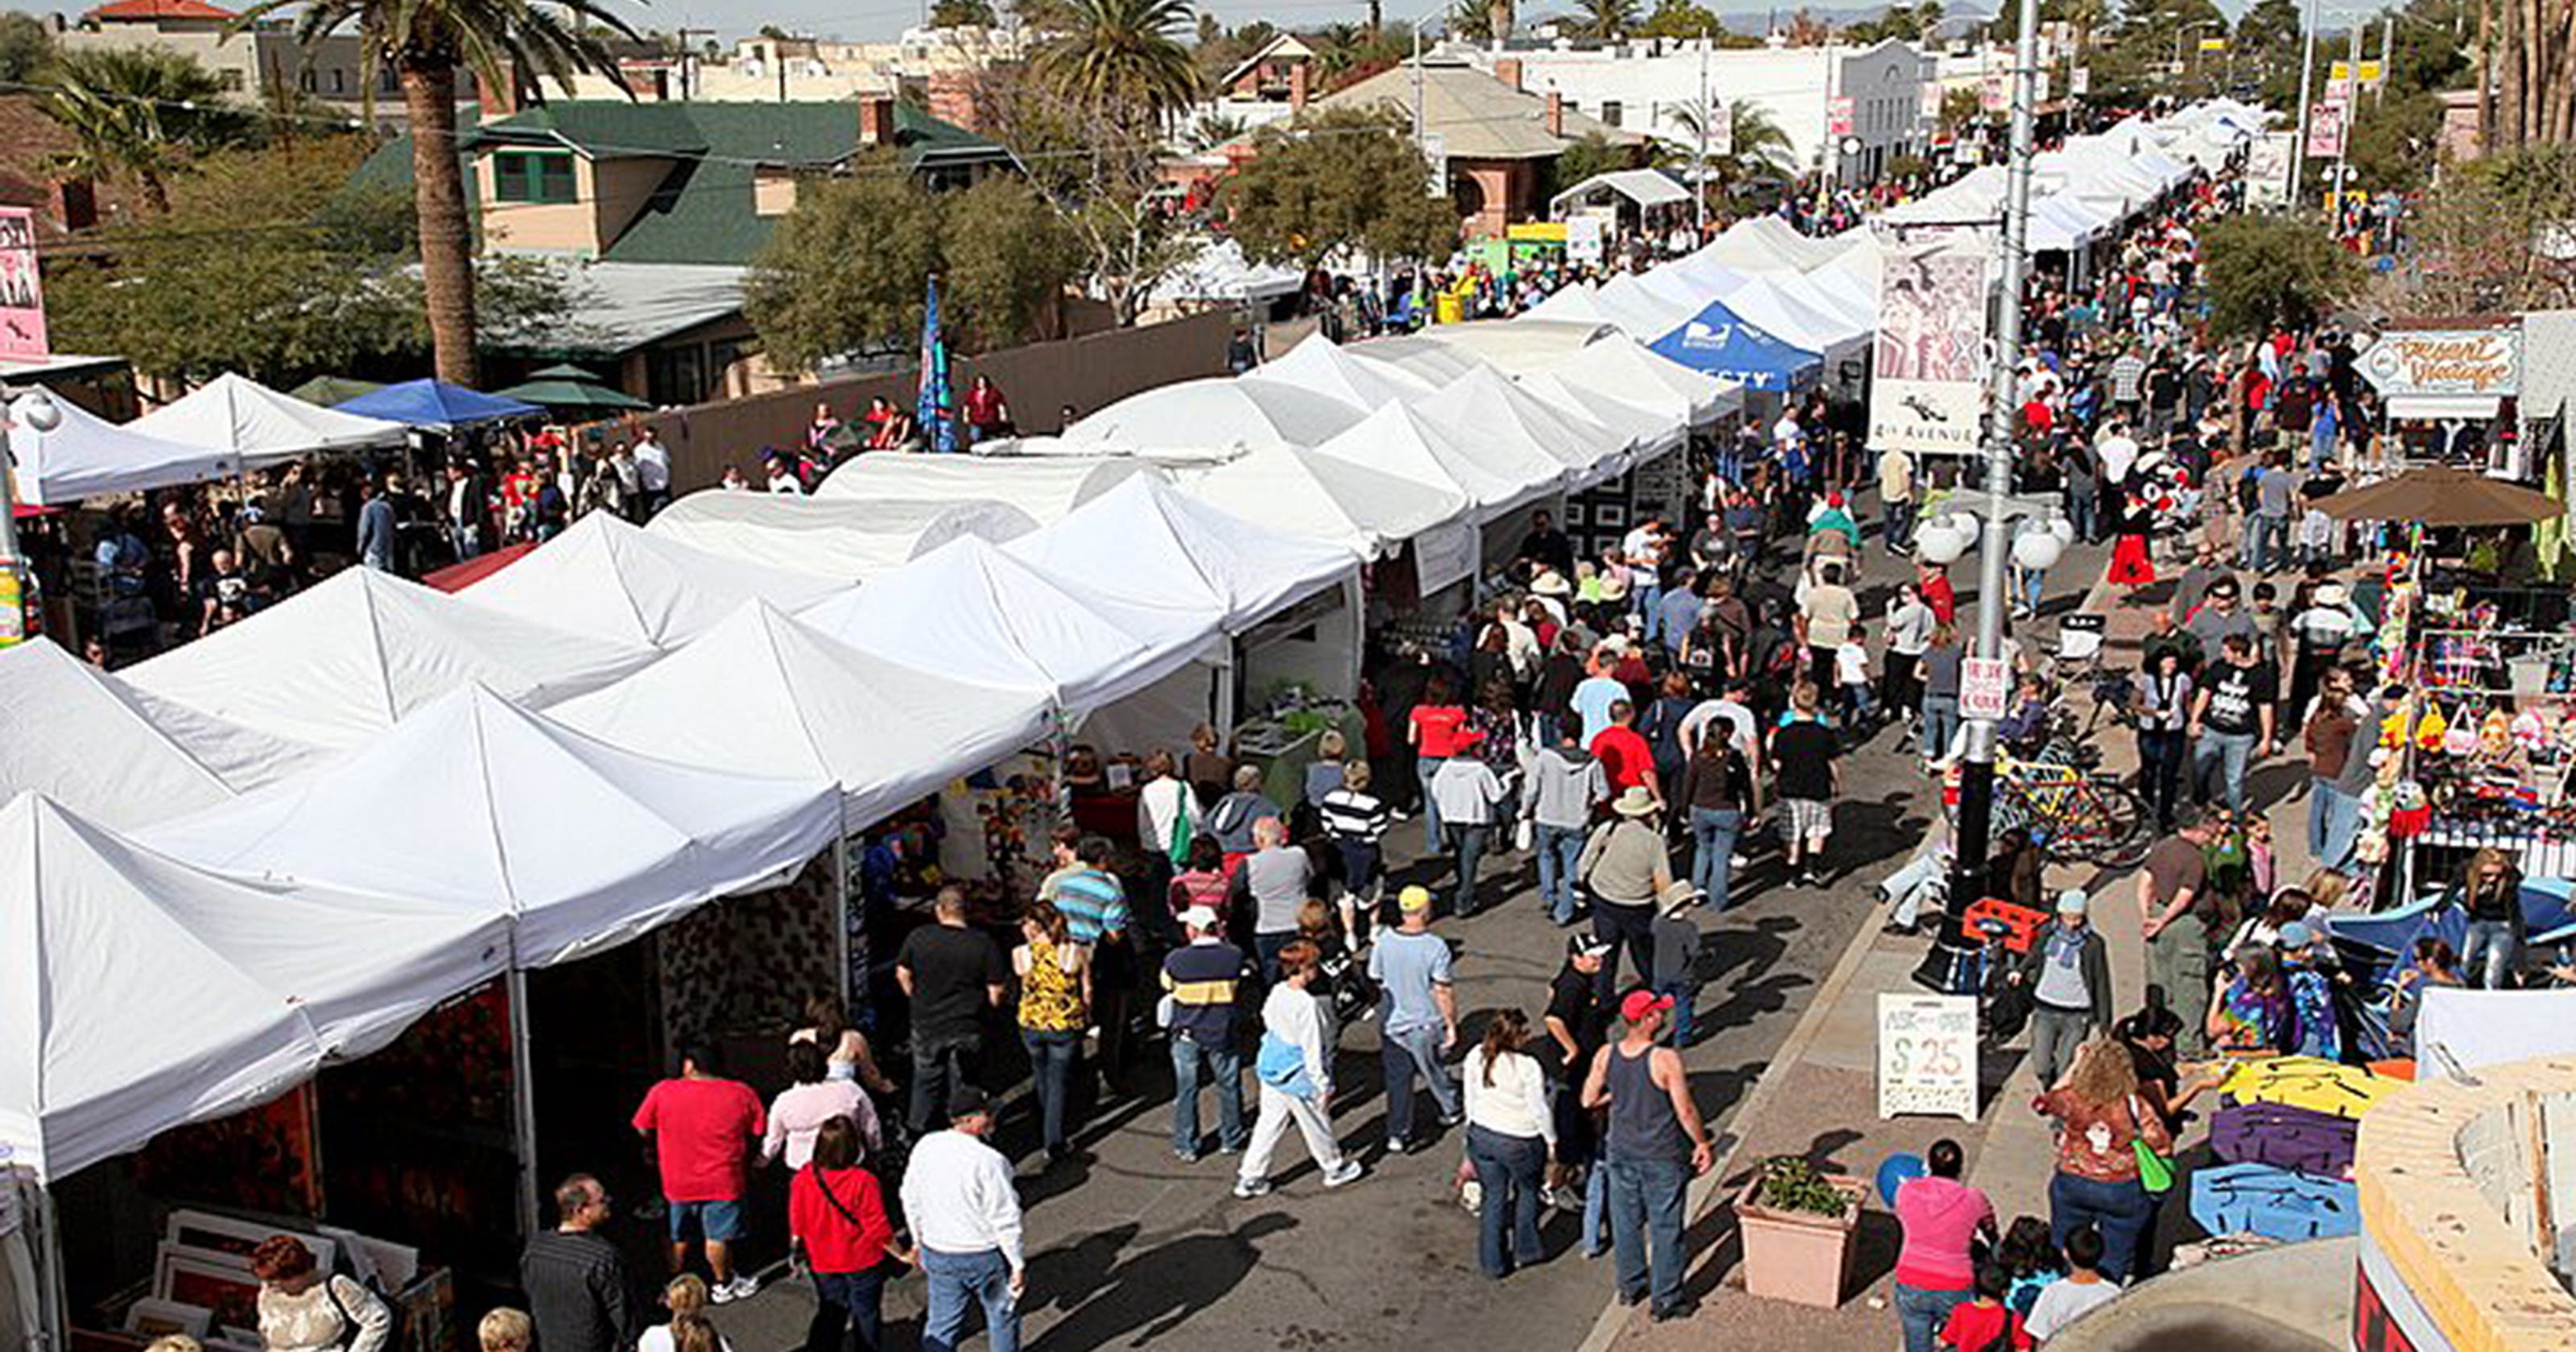 12/1214 Fourth Avenue Street Fair, Tucson